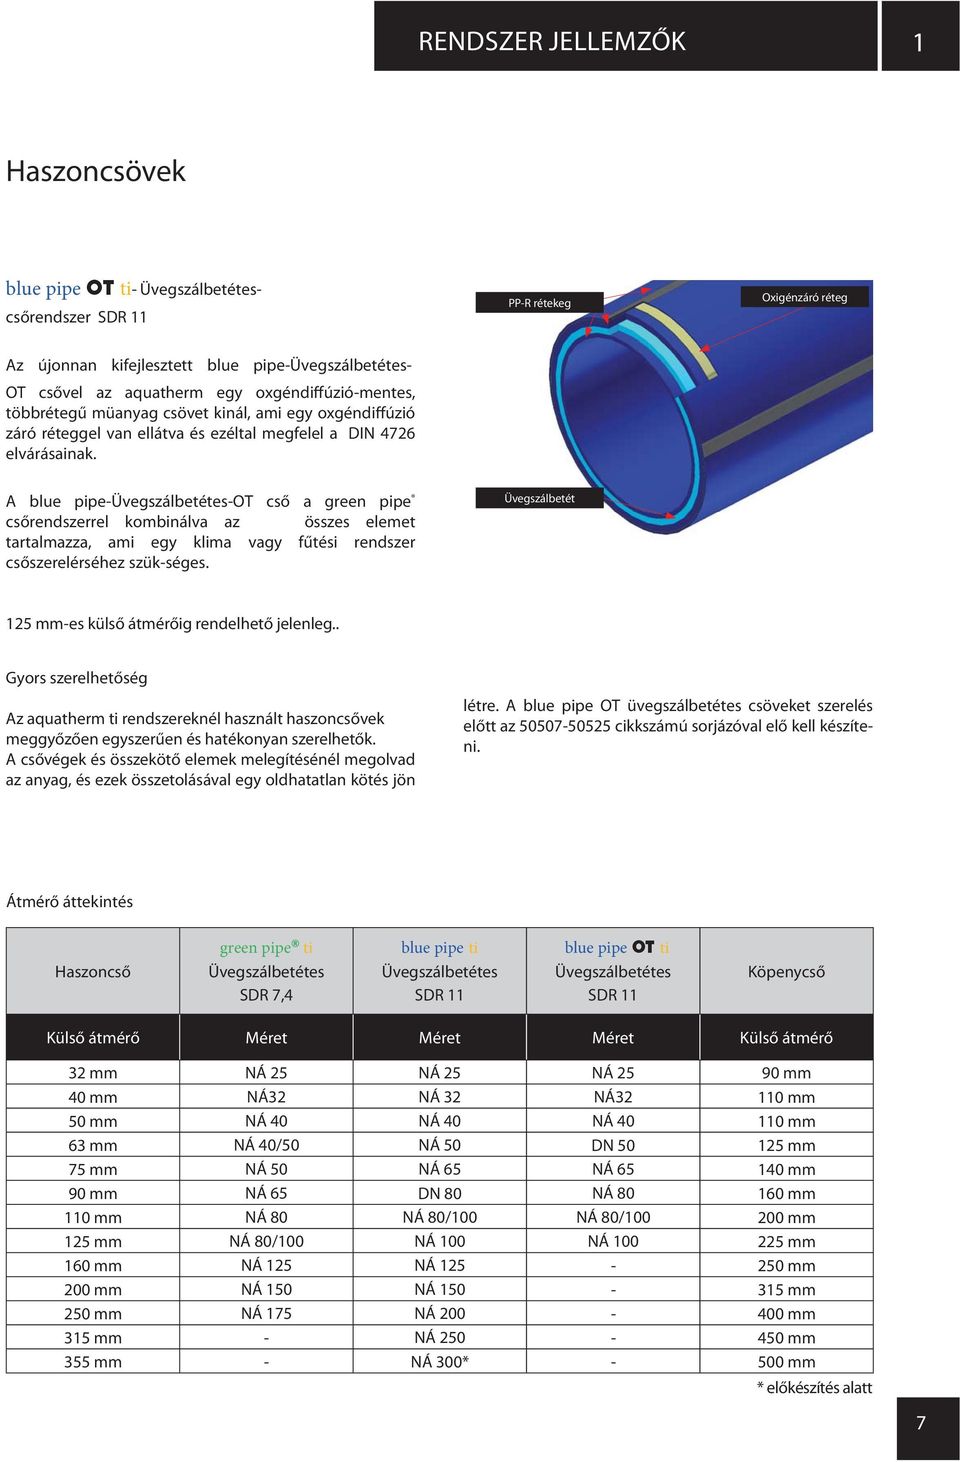 A blue pipe-üvegszálbetétes-ot cső a green pipe csőrendszerrel kombinálva az összes elemet tartalmazza, ami egy klima vagy fűtési rendszer csőszerelérséhez szük-séges.